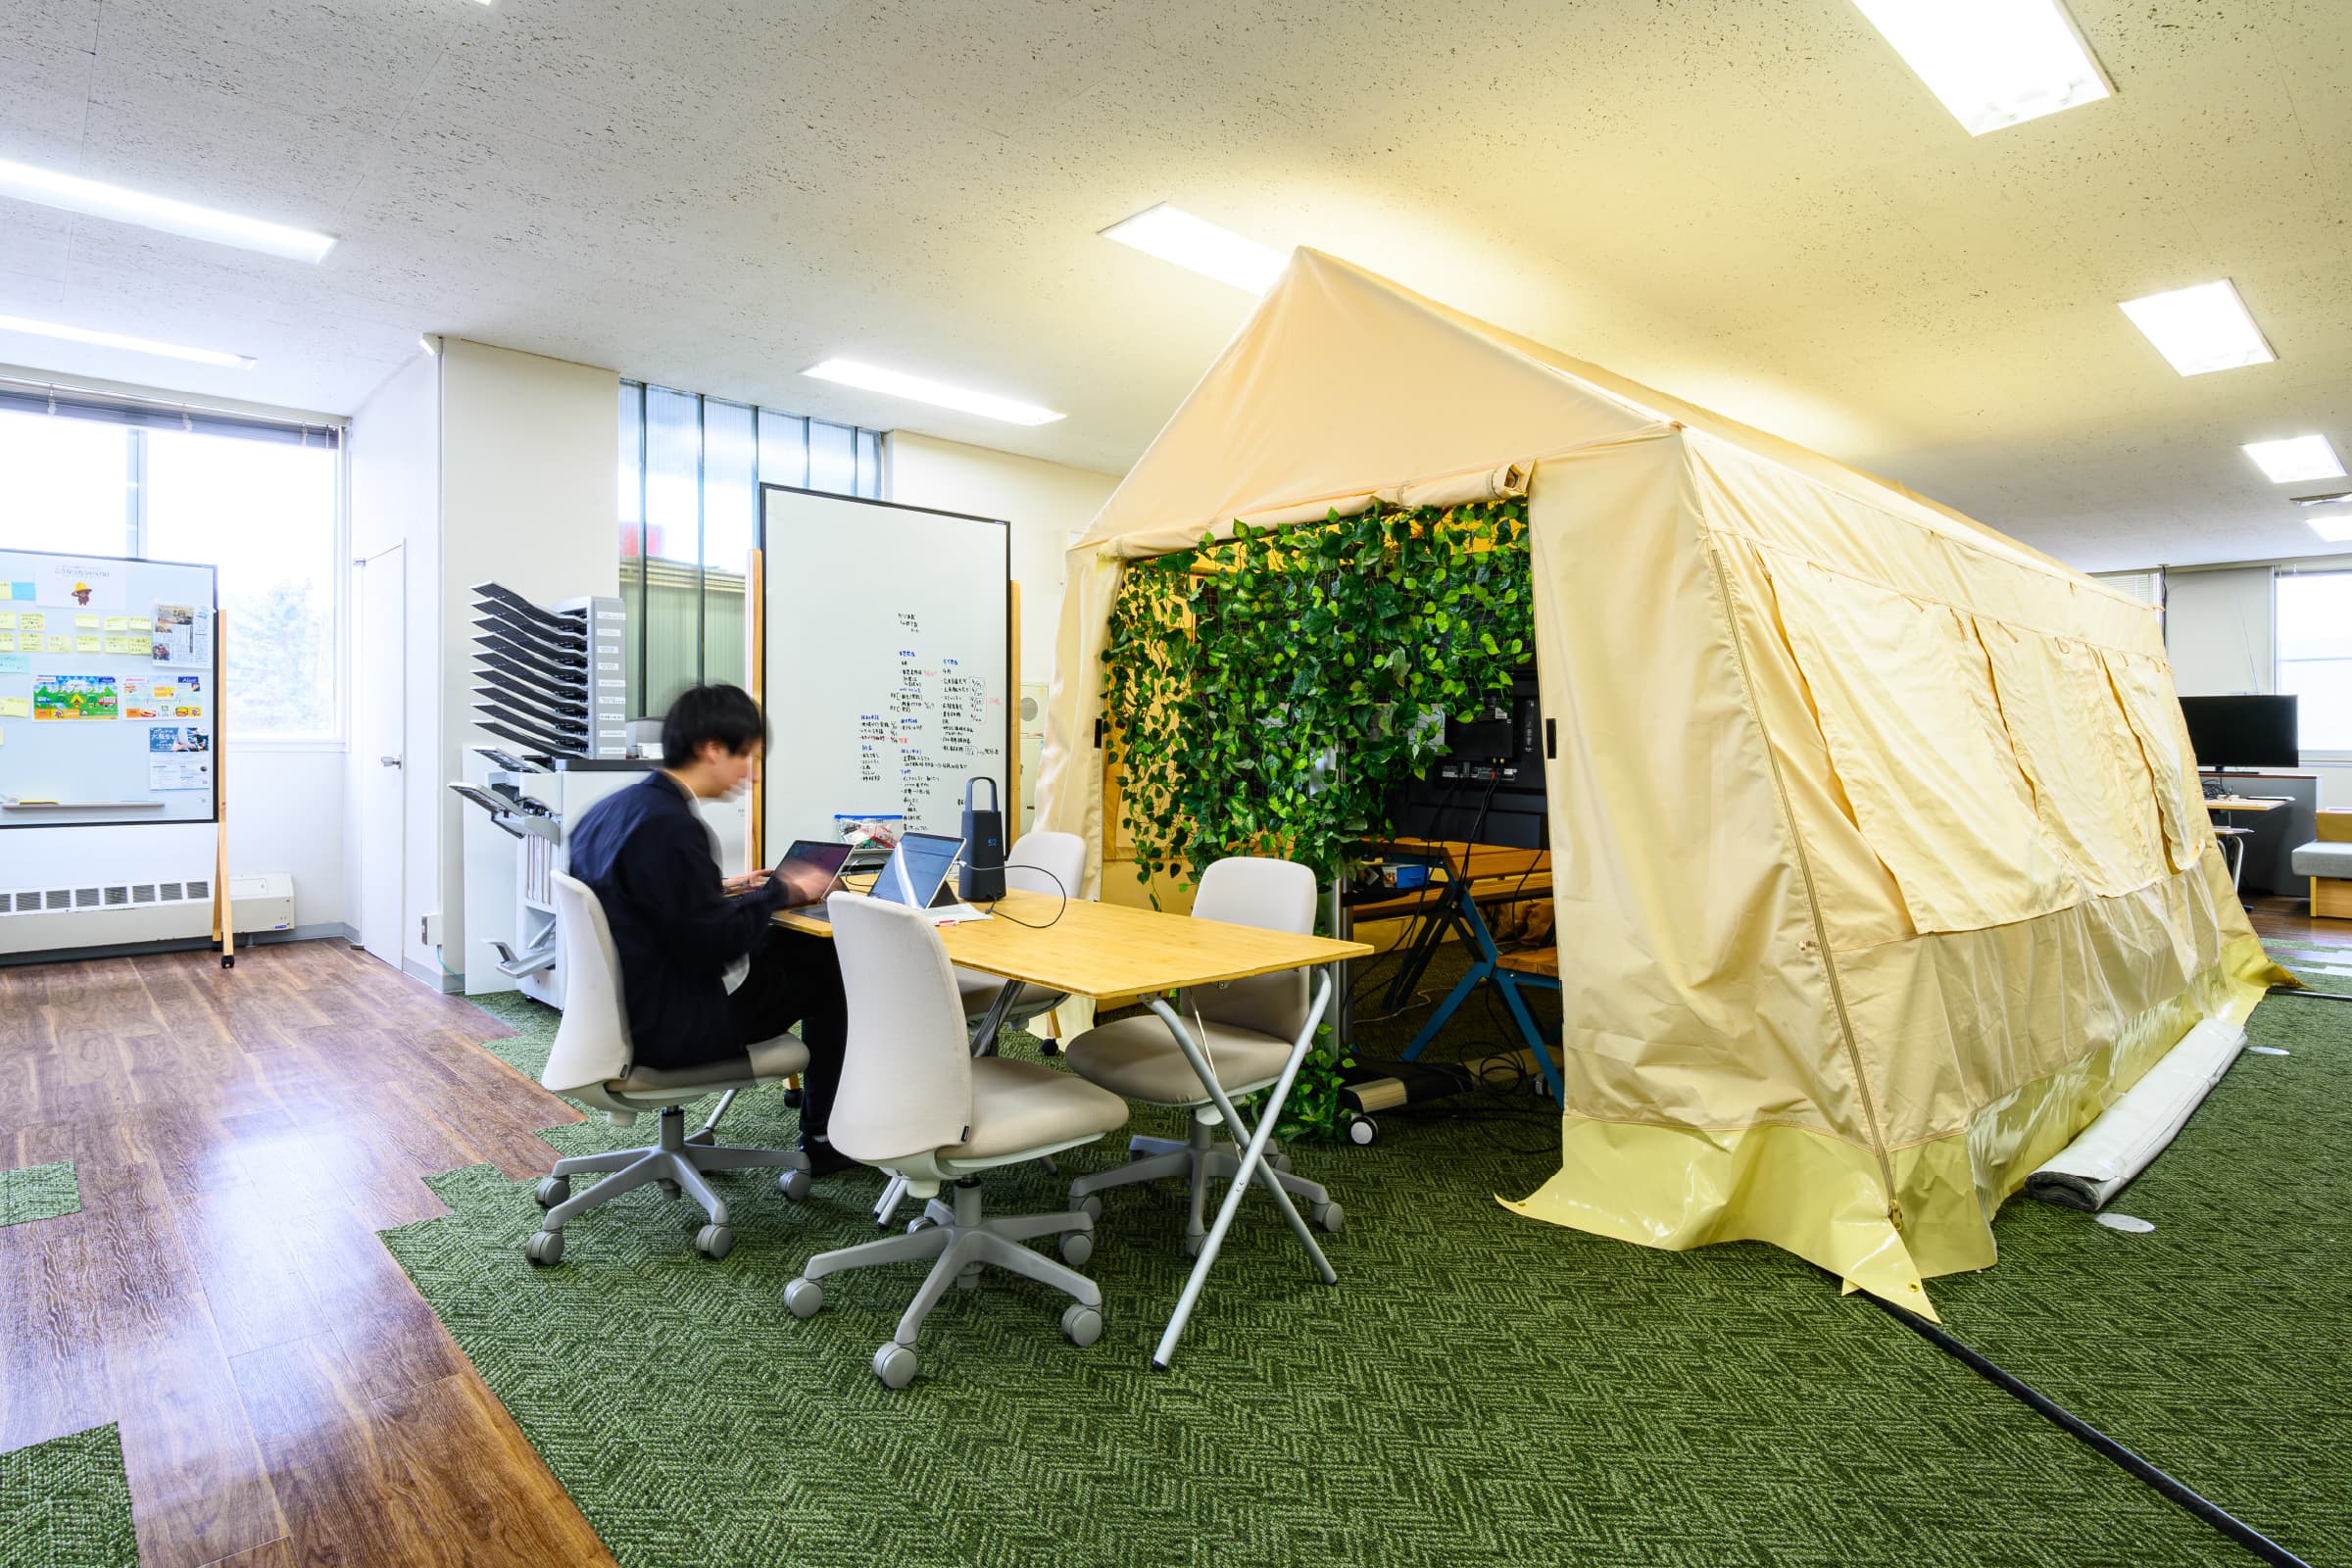 テントスペース／執務室中央部に配置し、オフィスの象徴ともいえるテントスペース。通常オフィスにはない設えを採用することで、柔軟な発想を促し、職員のモチベーションアップにつなげている。